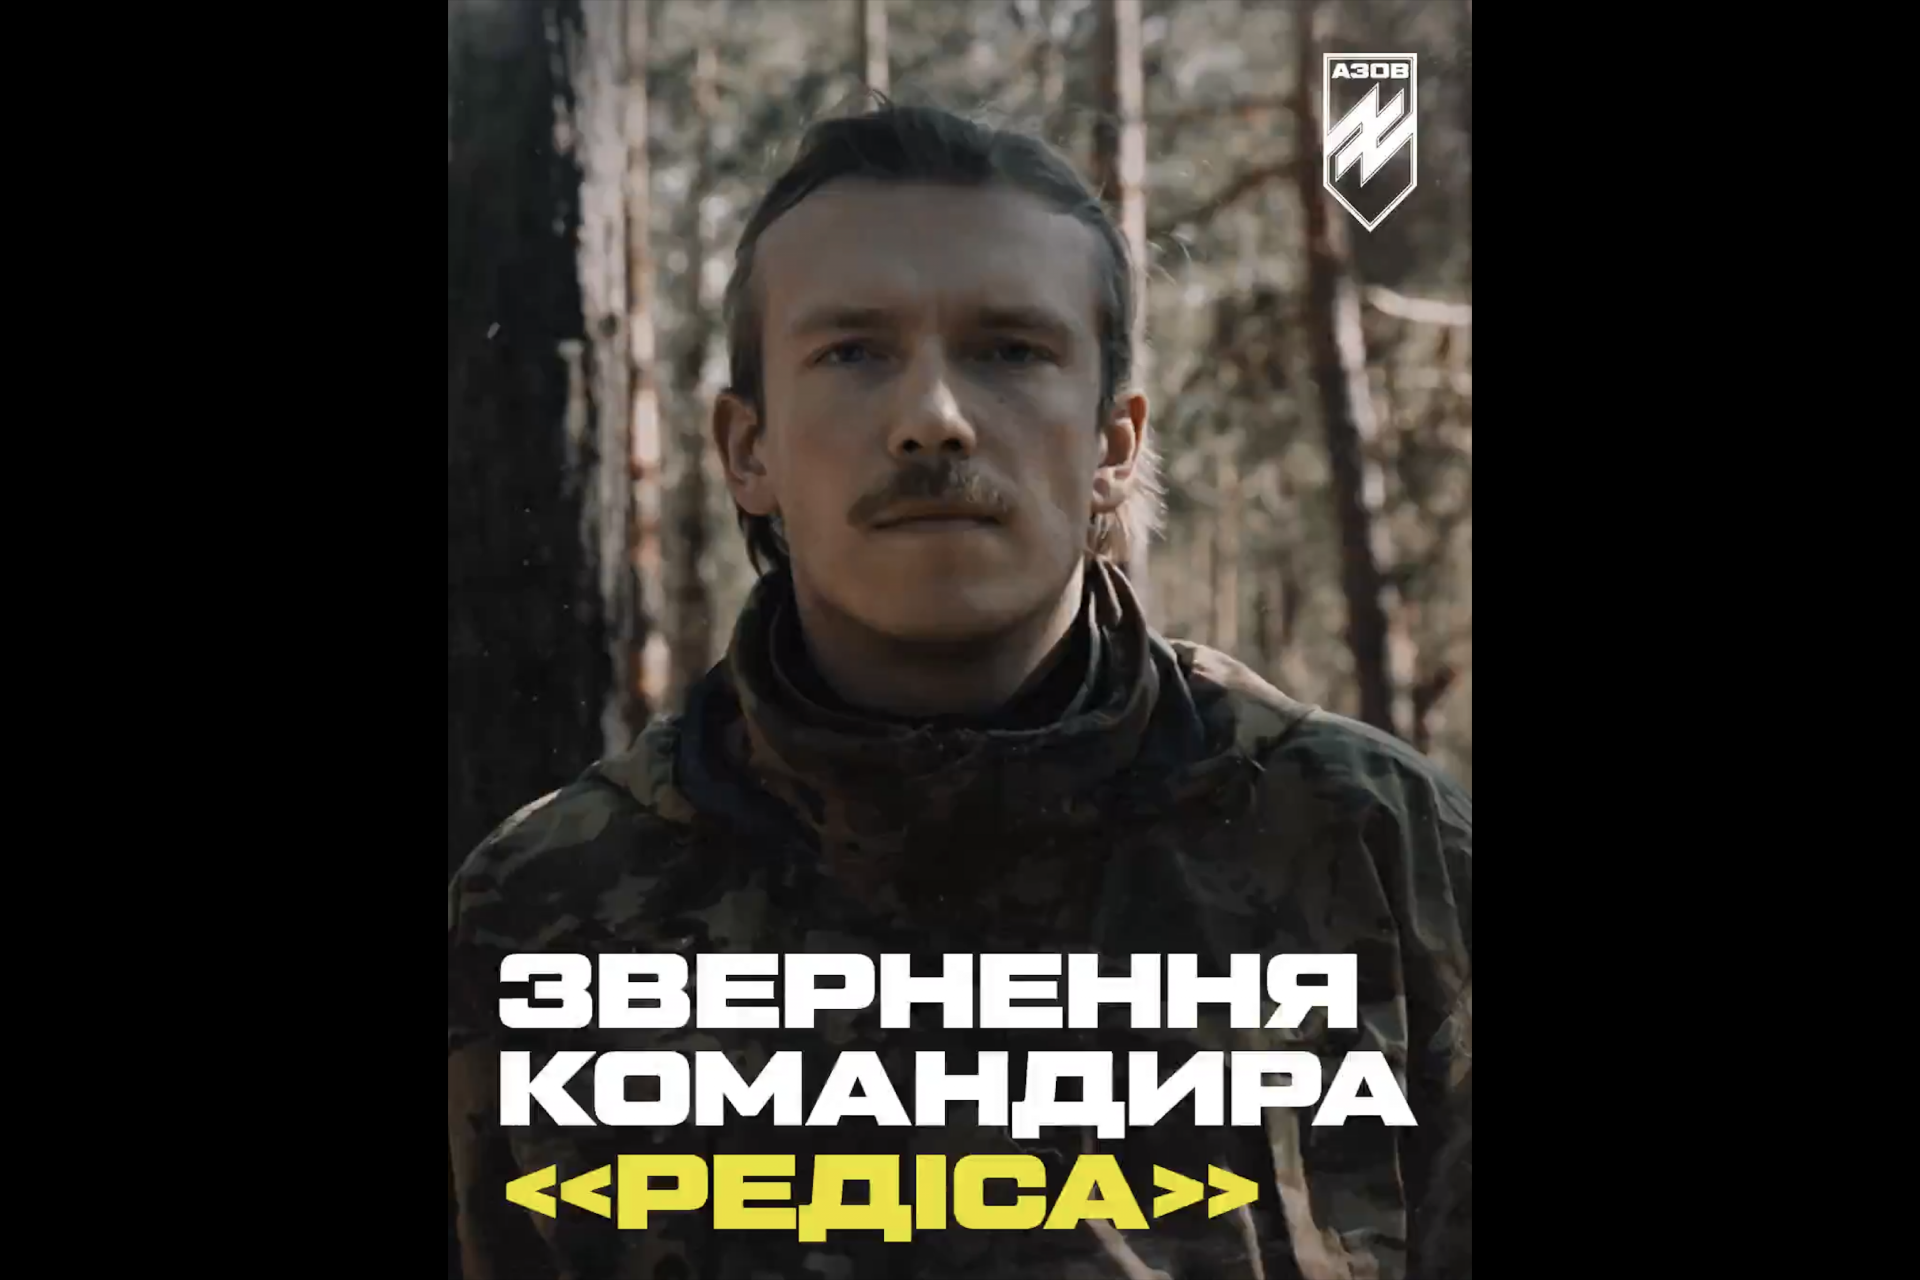 Felicitaties aan de soldaten van Azov 